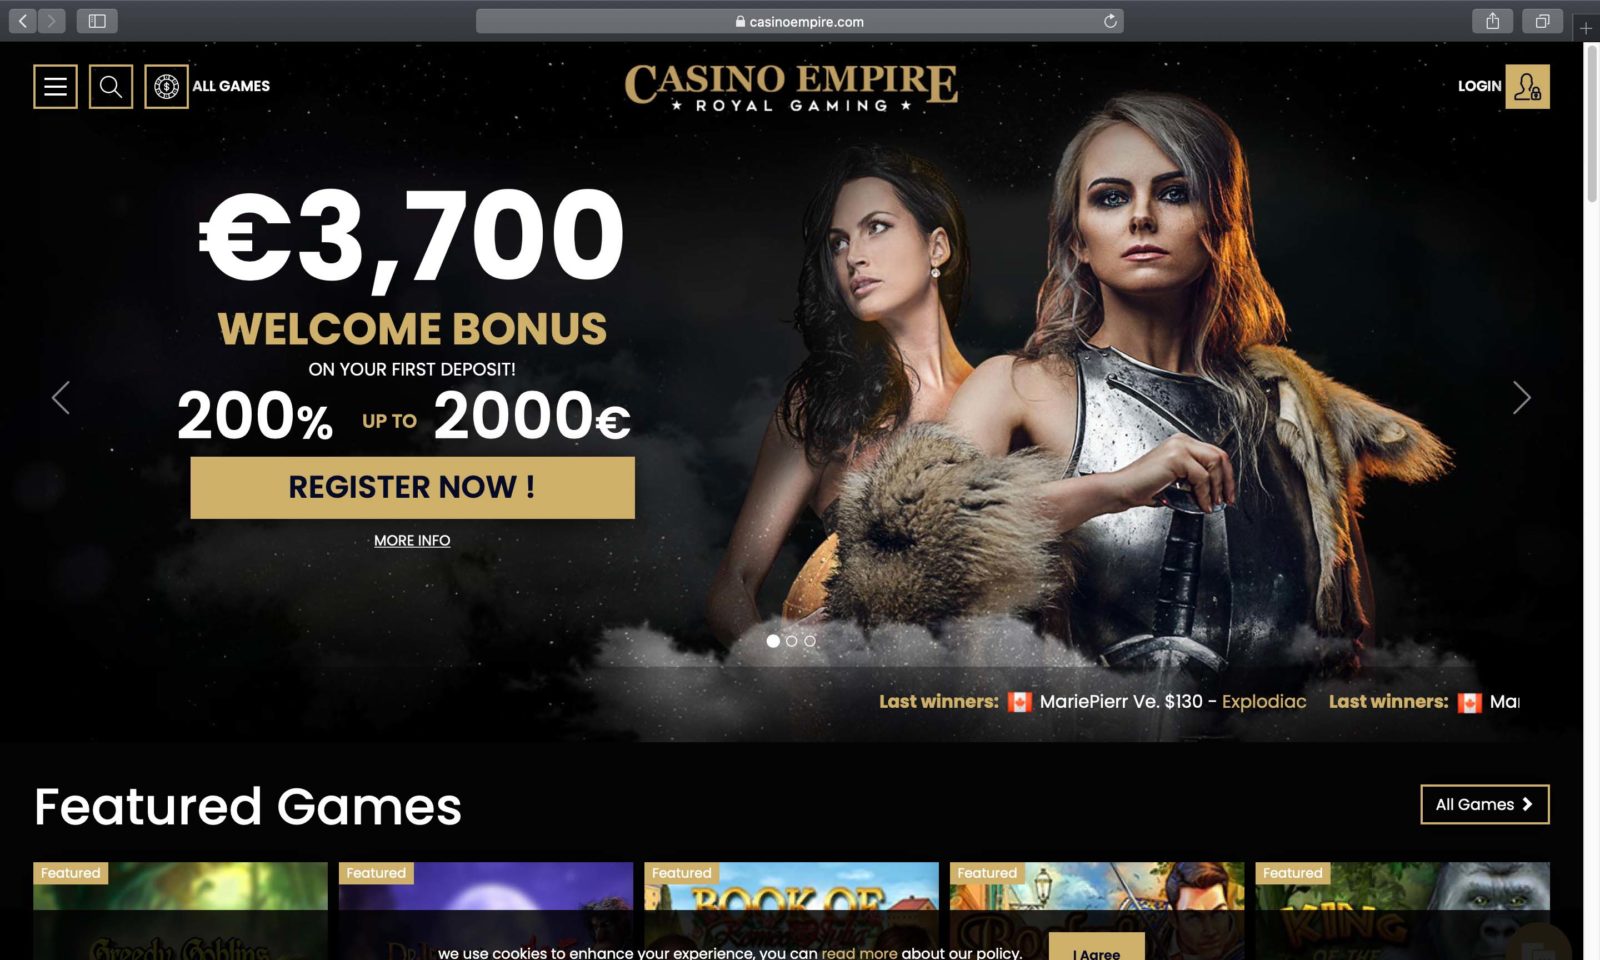 casino empire